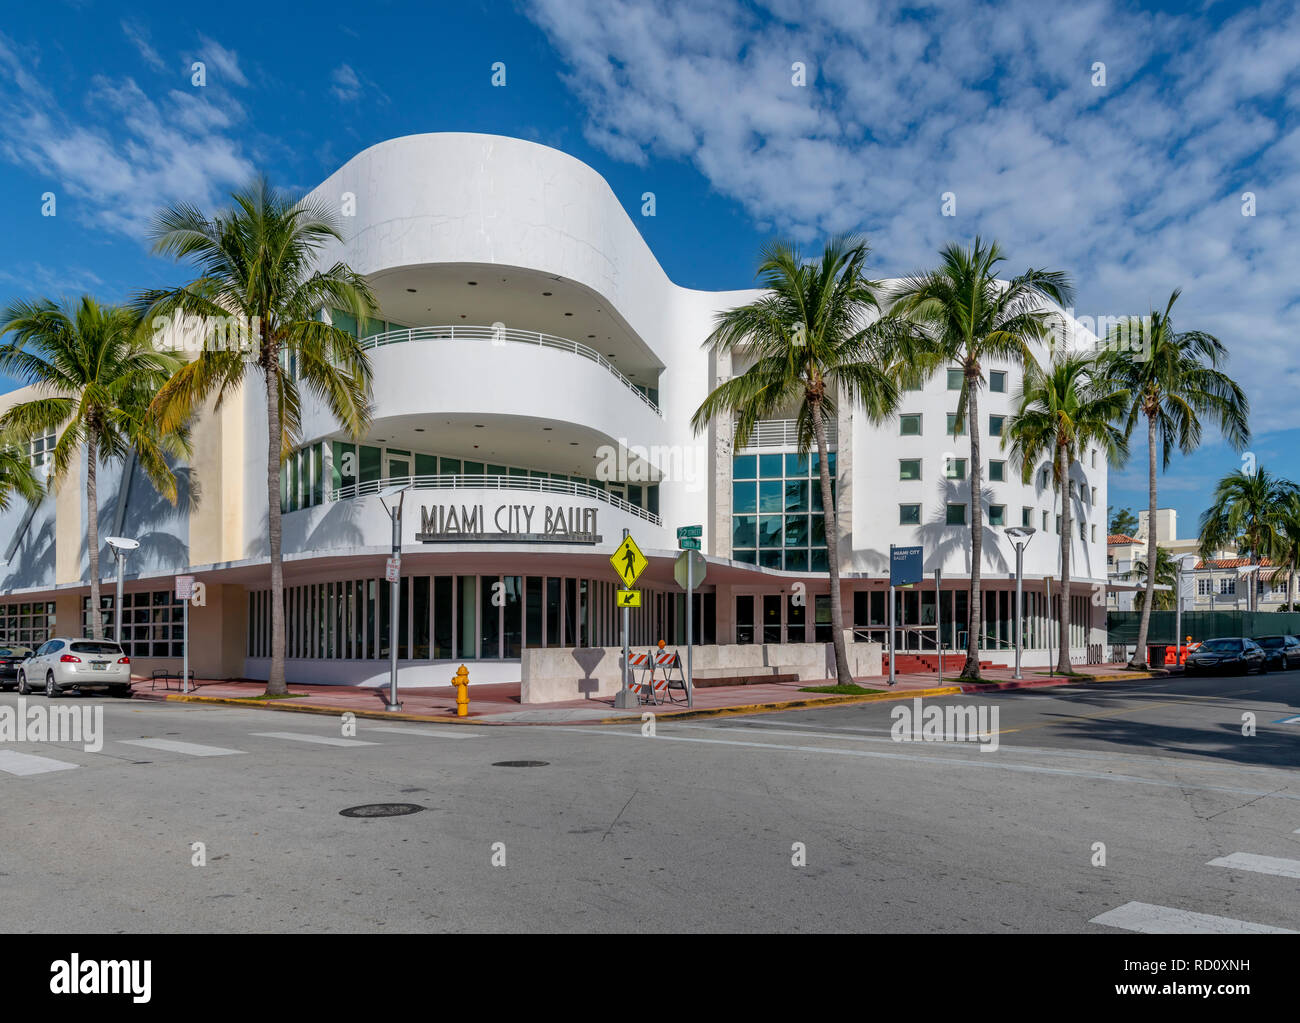 Miami City Ballet, Miami Beach, Florida, USA Stock Photo